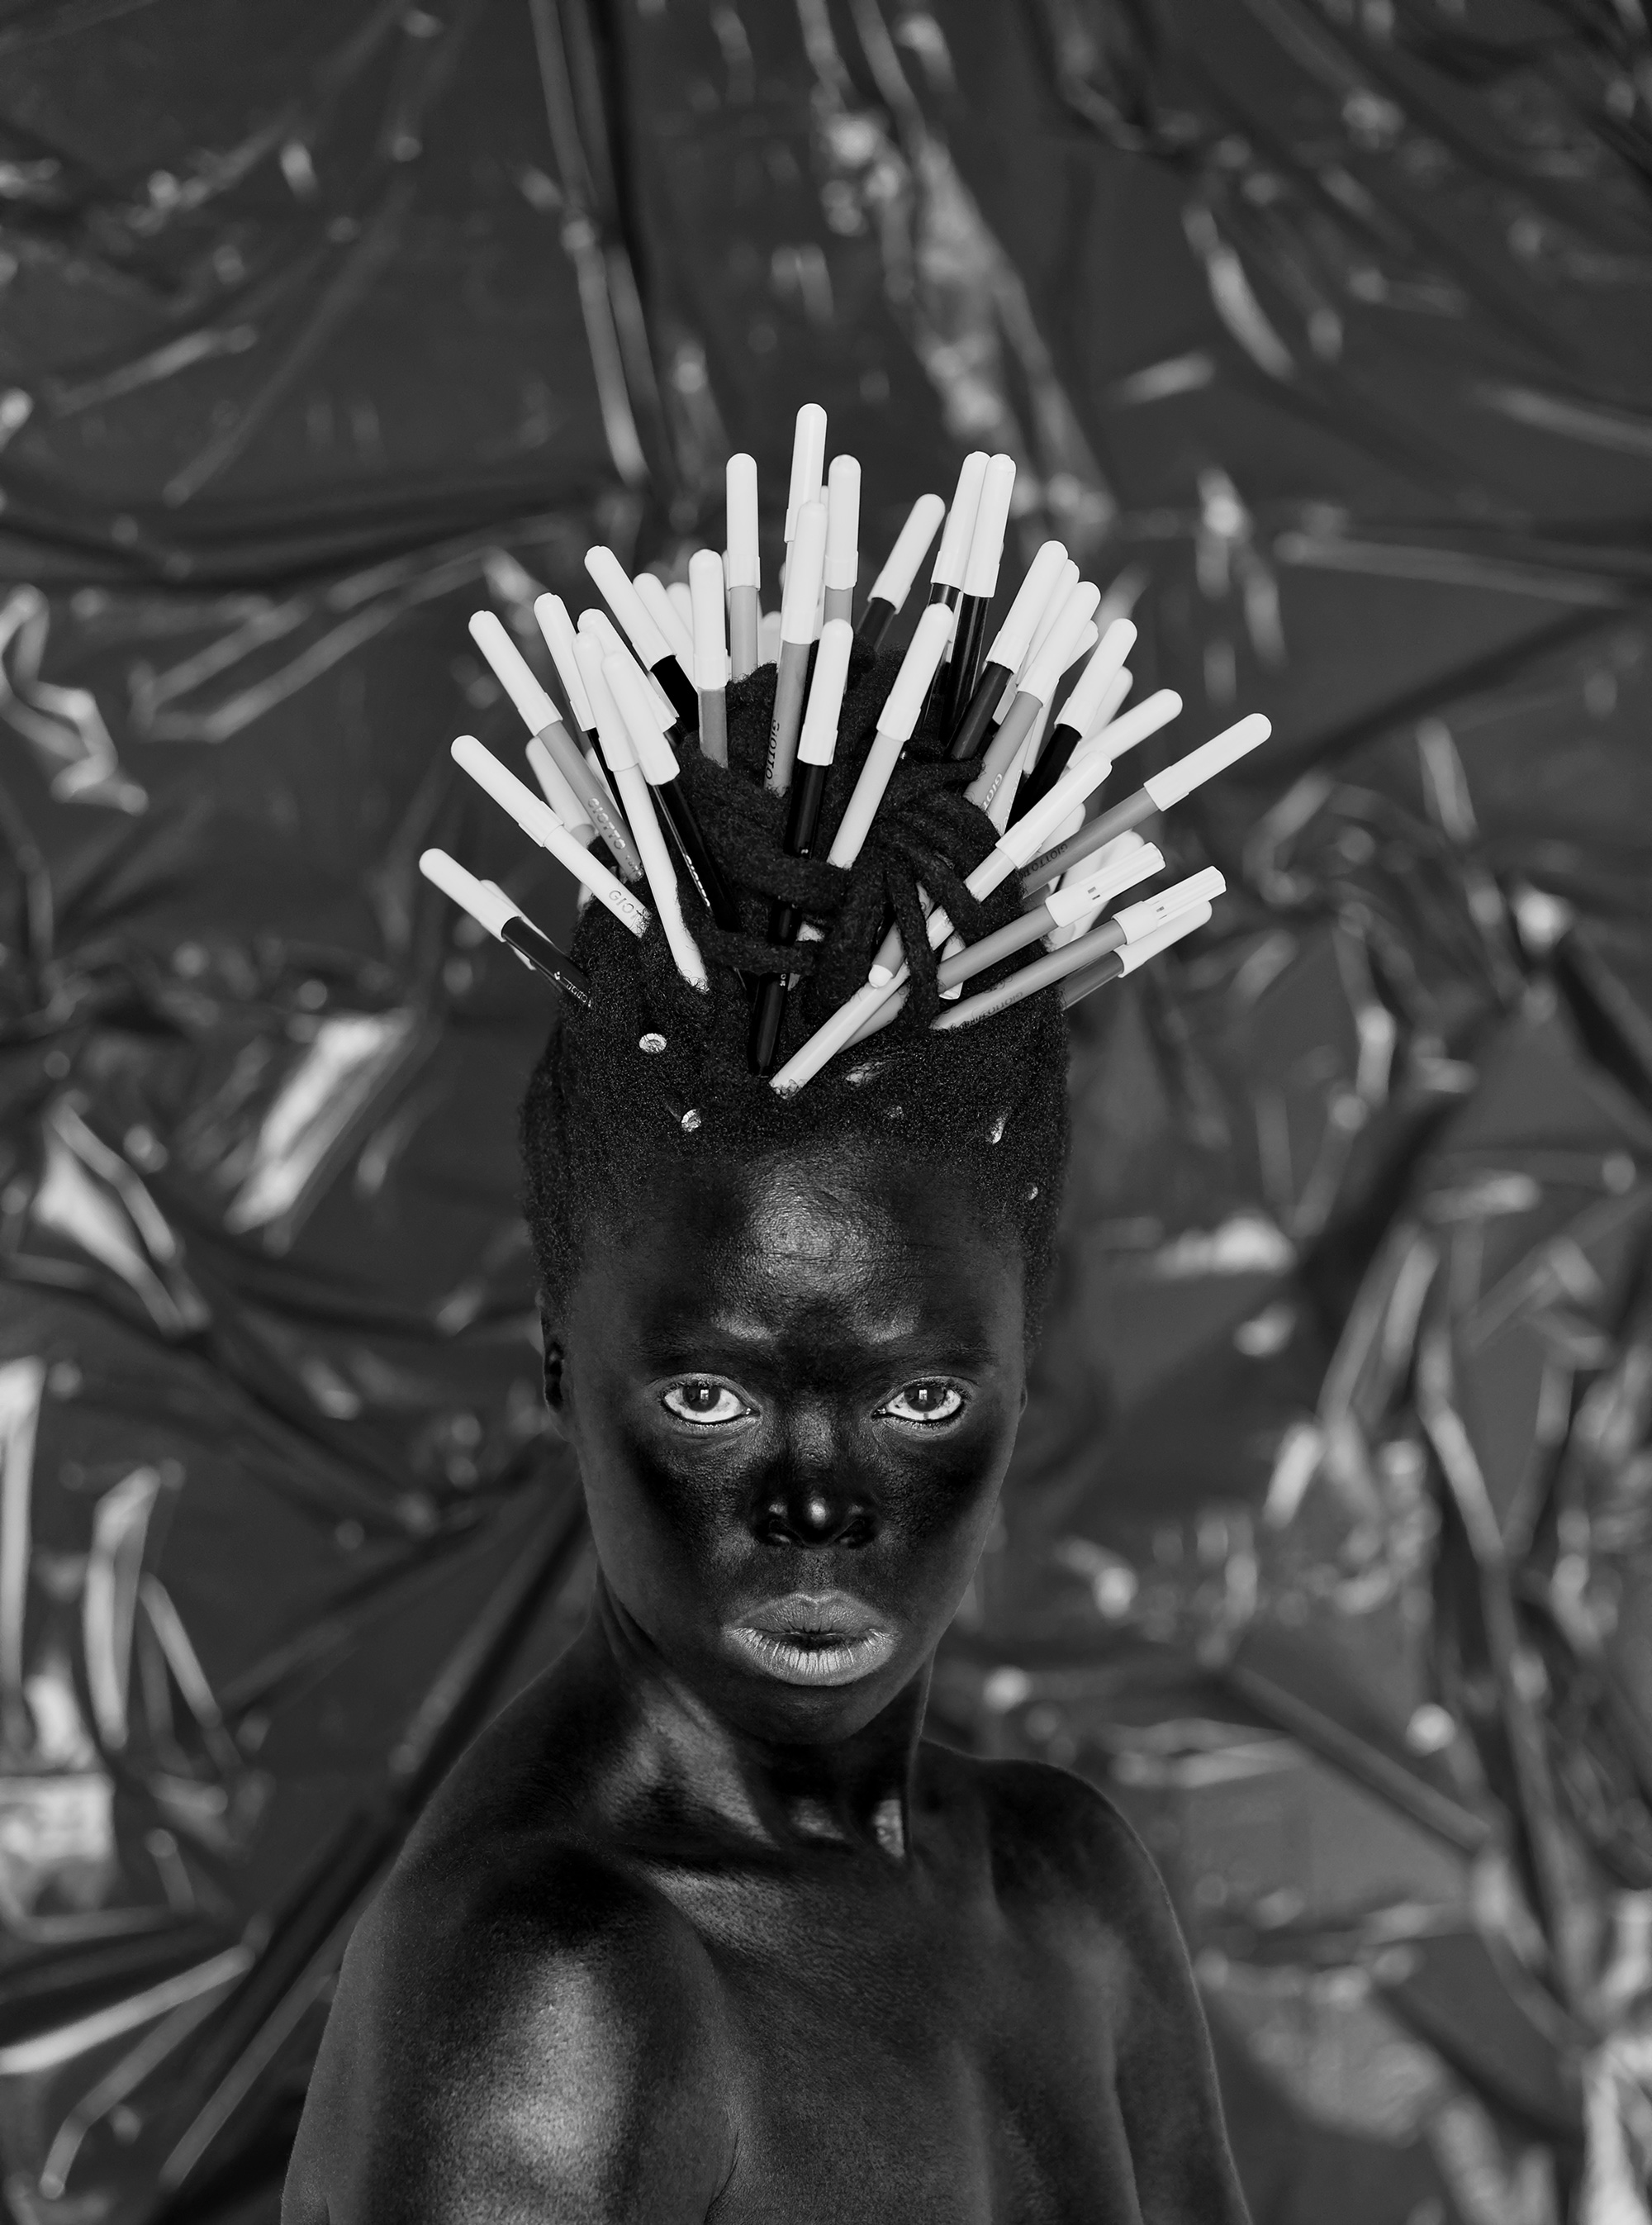 Art/Afrique, le Nouvel Atelier” at Fondation Louis Vuitton showcases African  art - LVMH